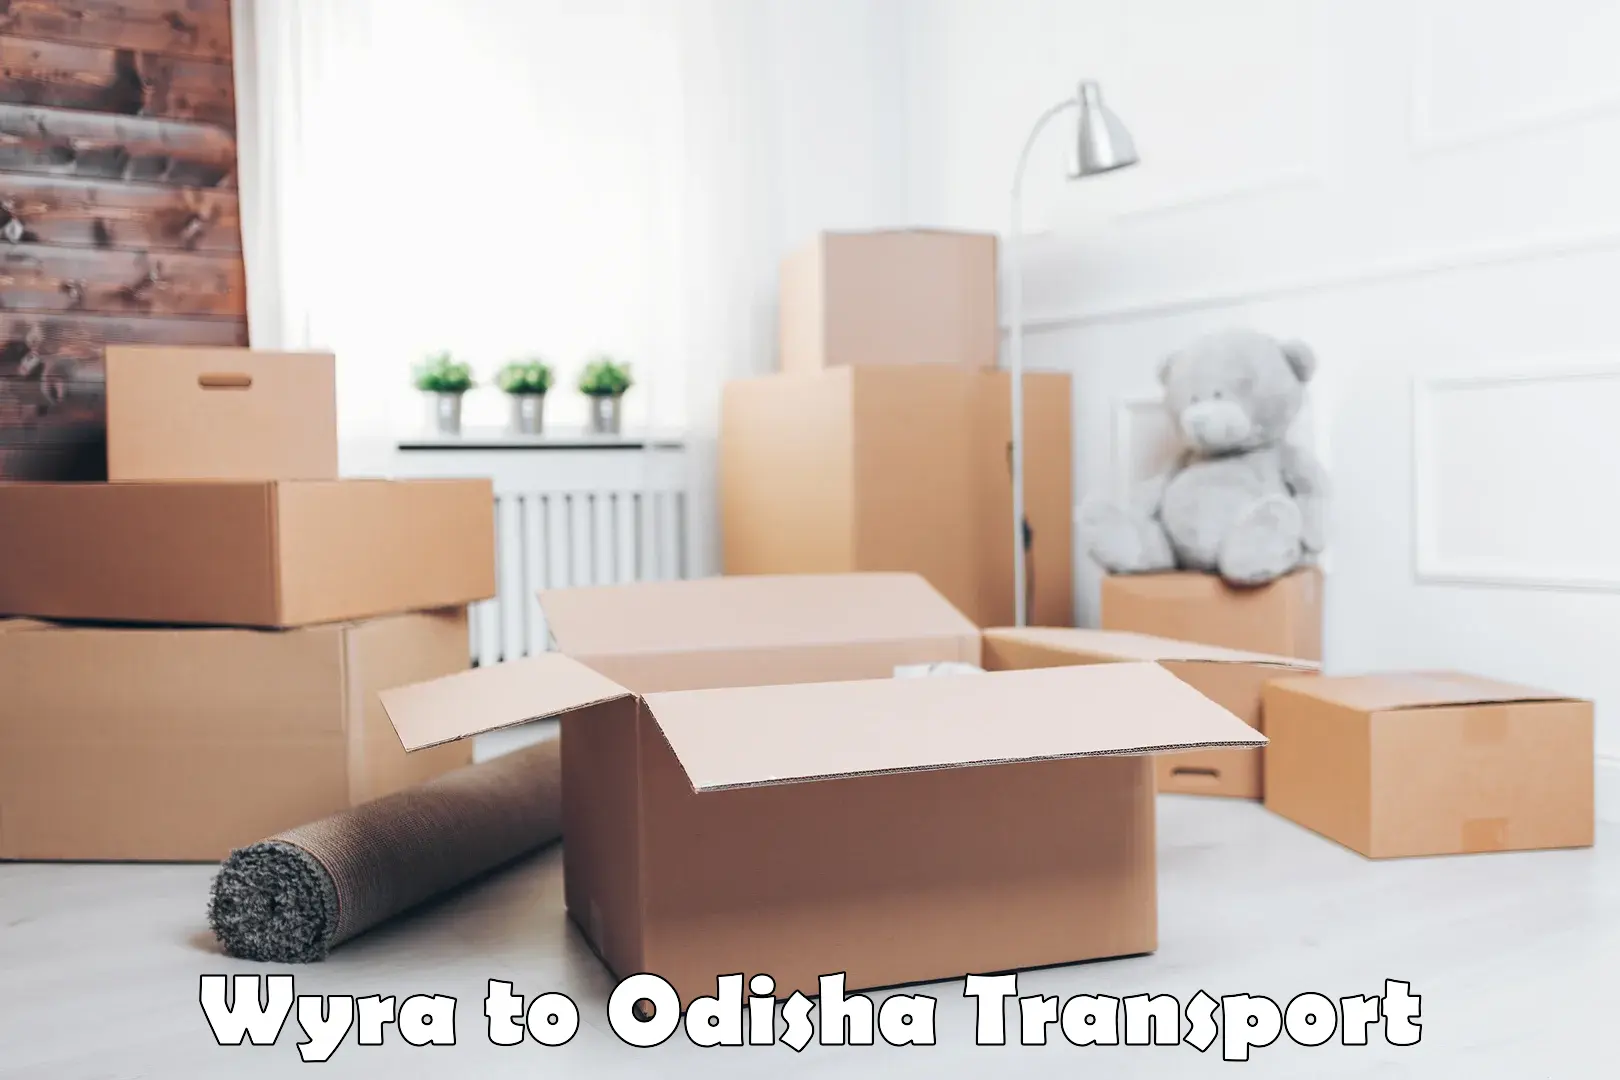 Container transport service Wyra to Raikia